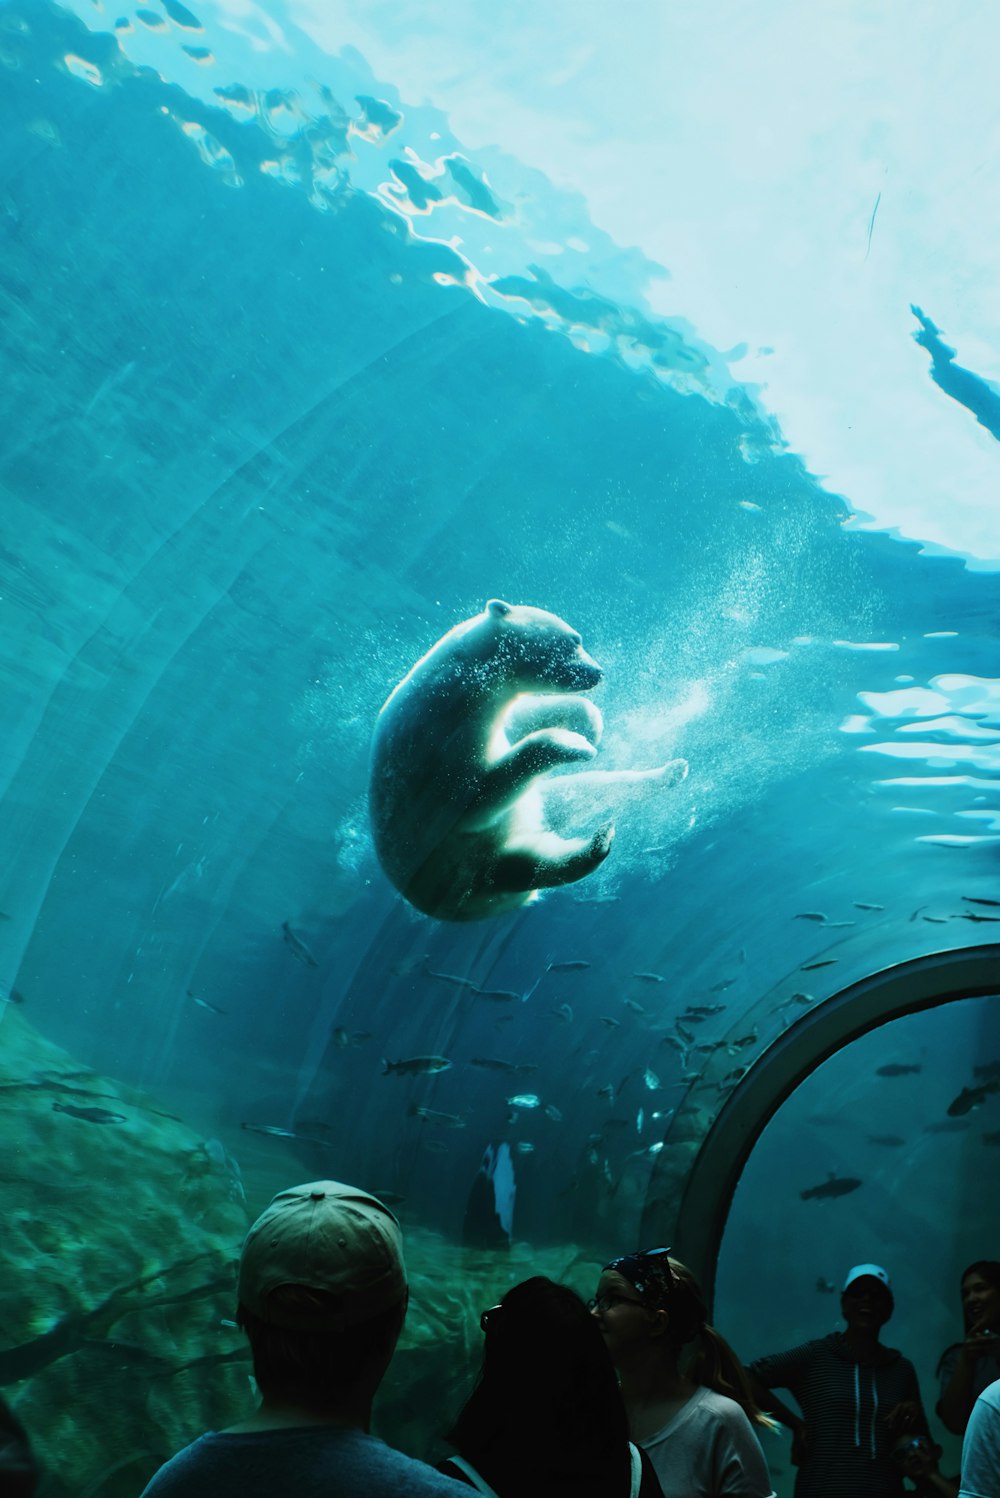 Urso polar nadando sob a água em um parque oceânico